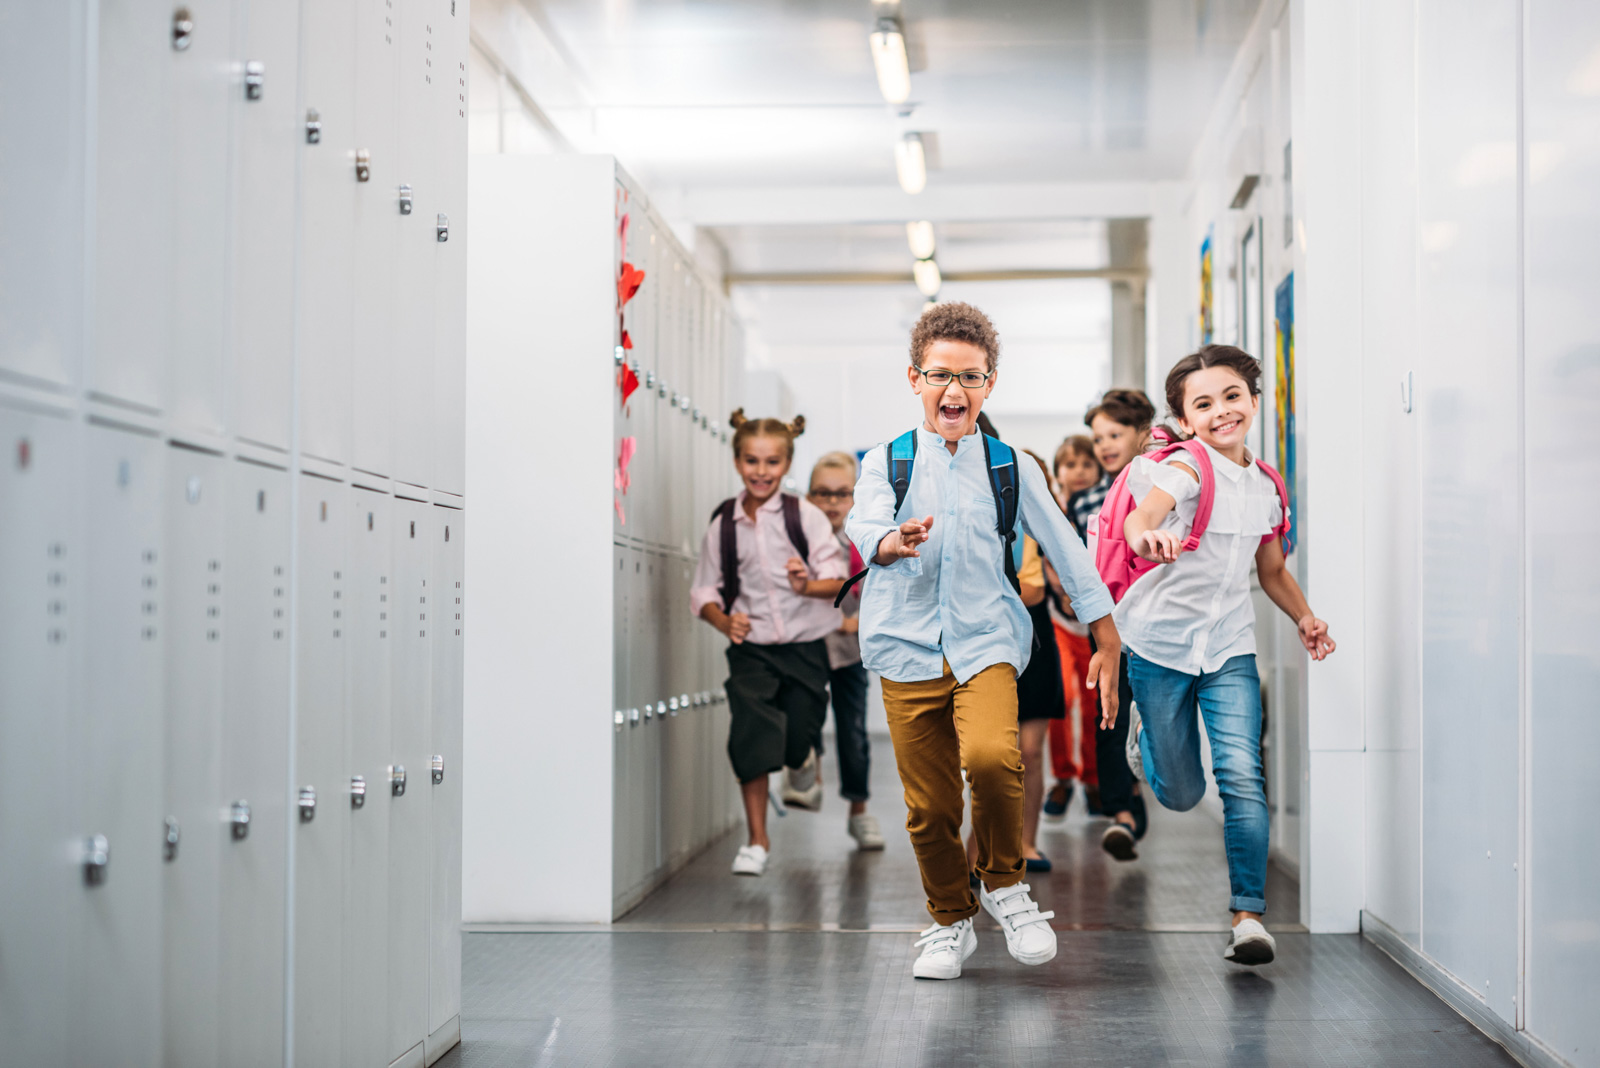 kids running in school hallway